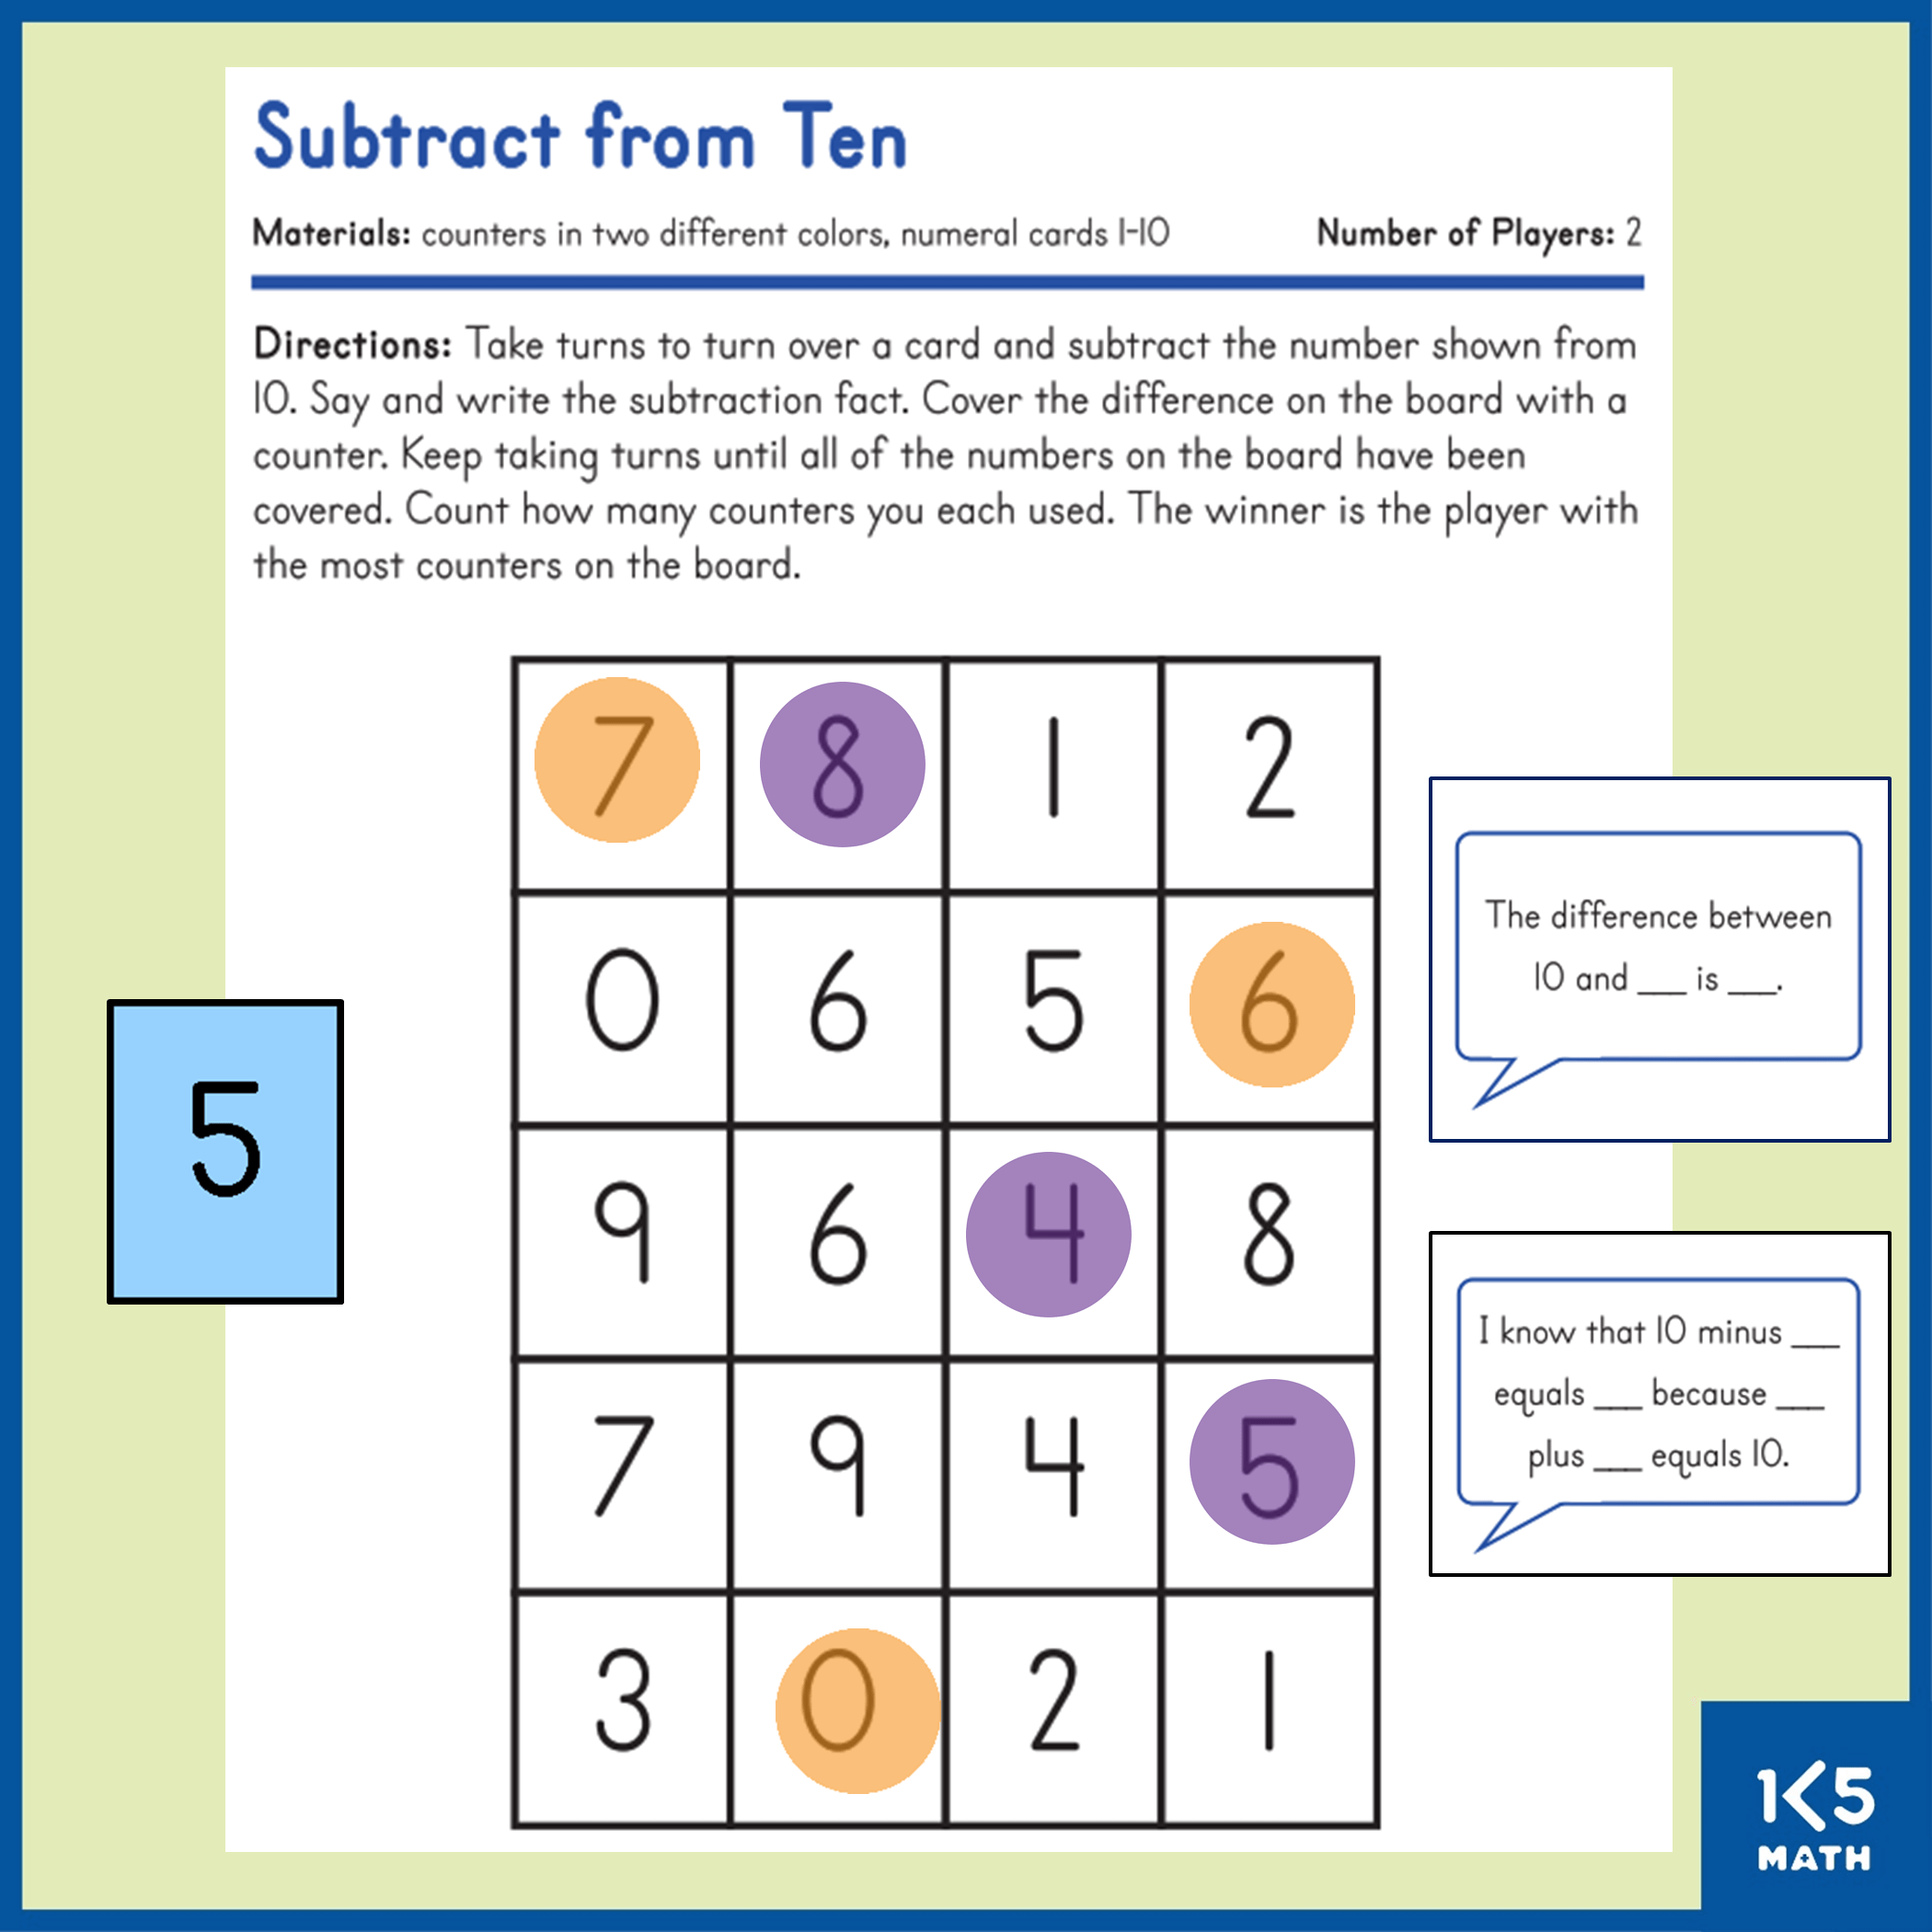 Subtract from Ten